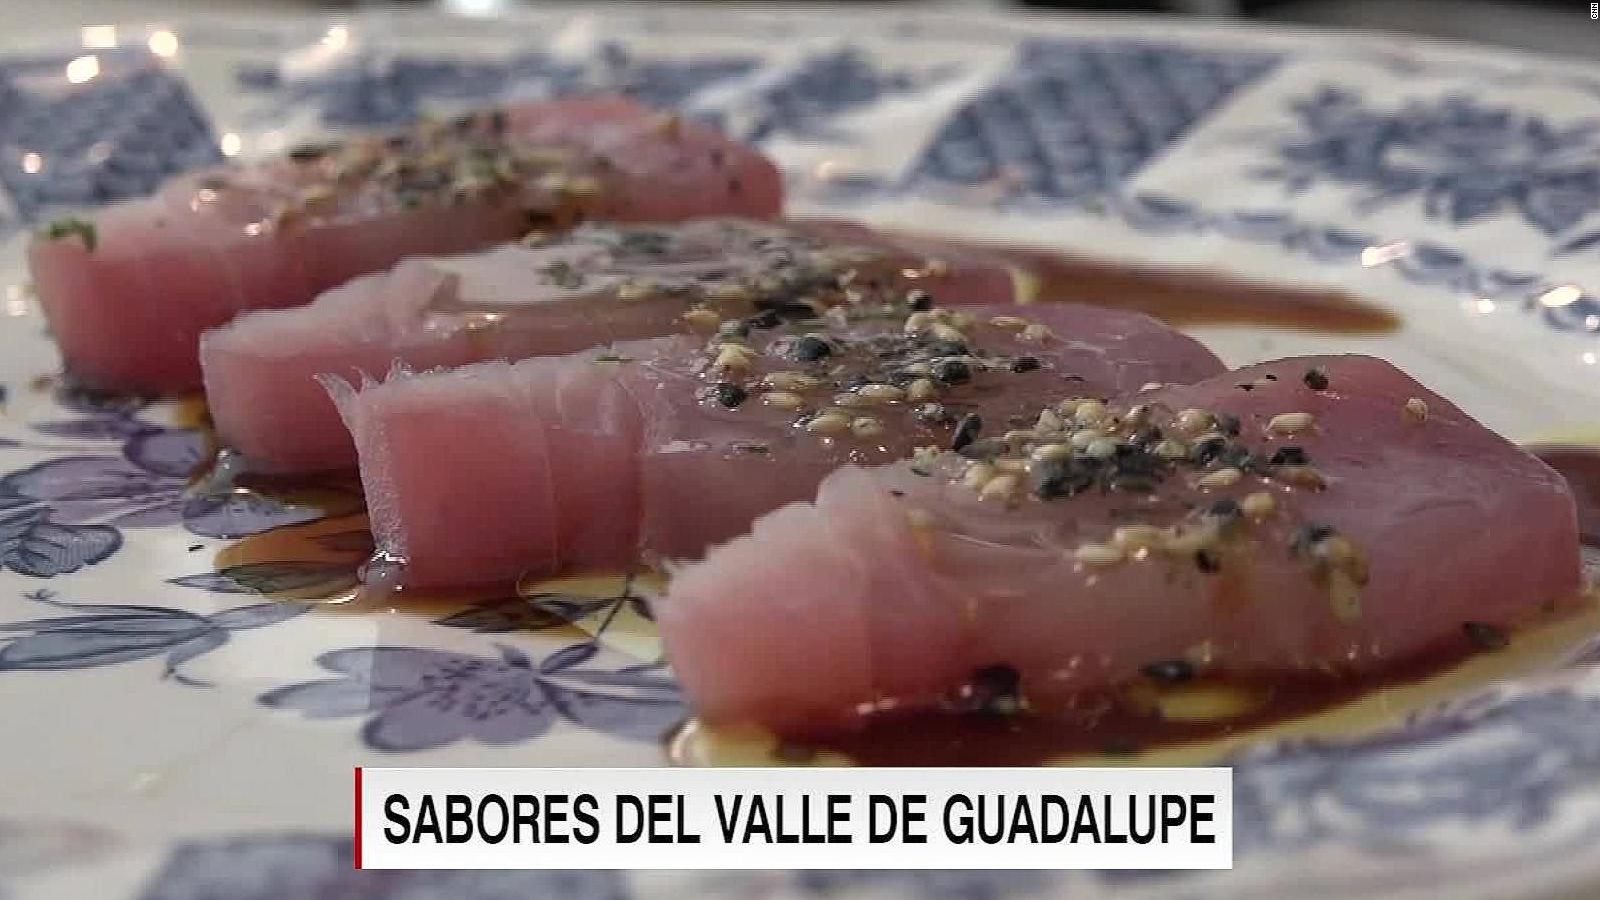 La receta para hacer sashimi de atún del chef Diego Hernández | Video | CNN